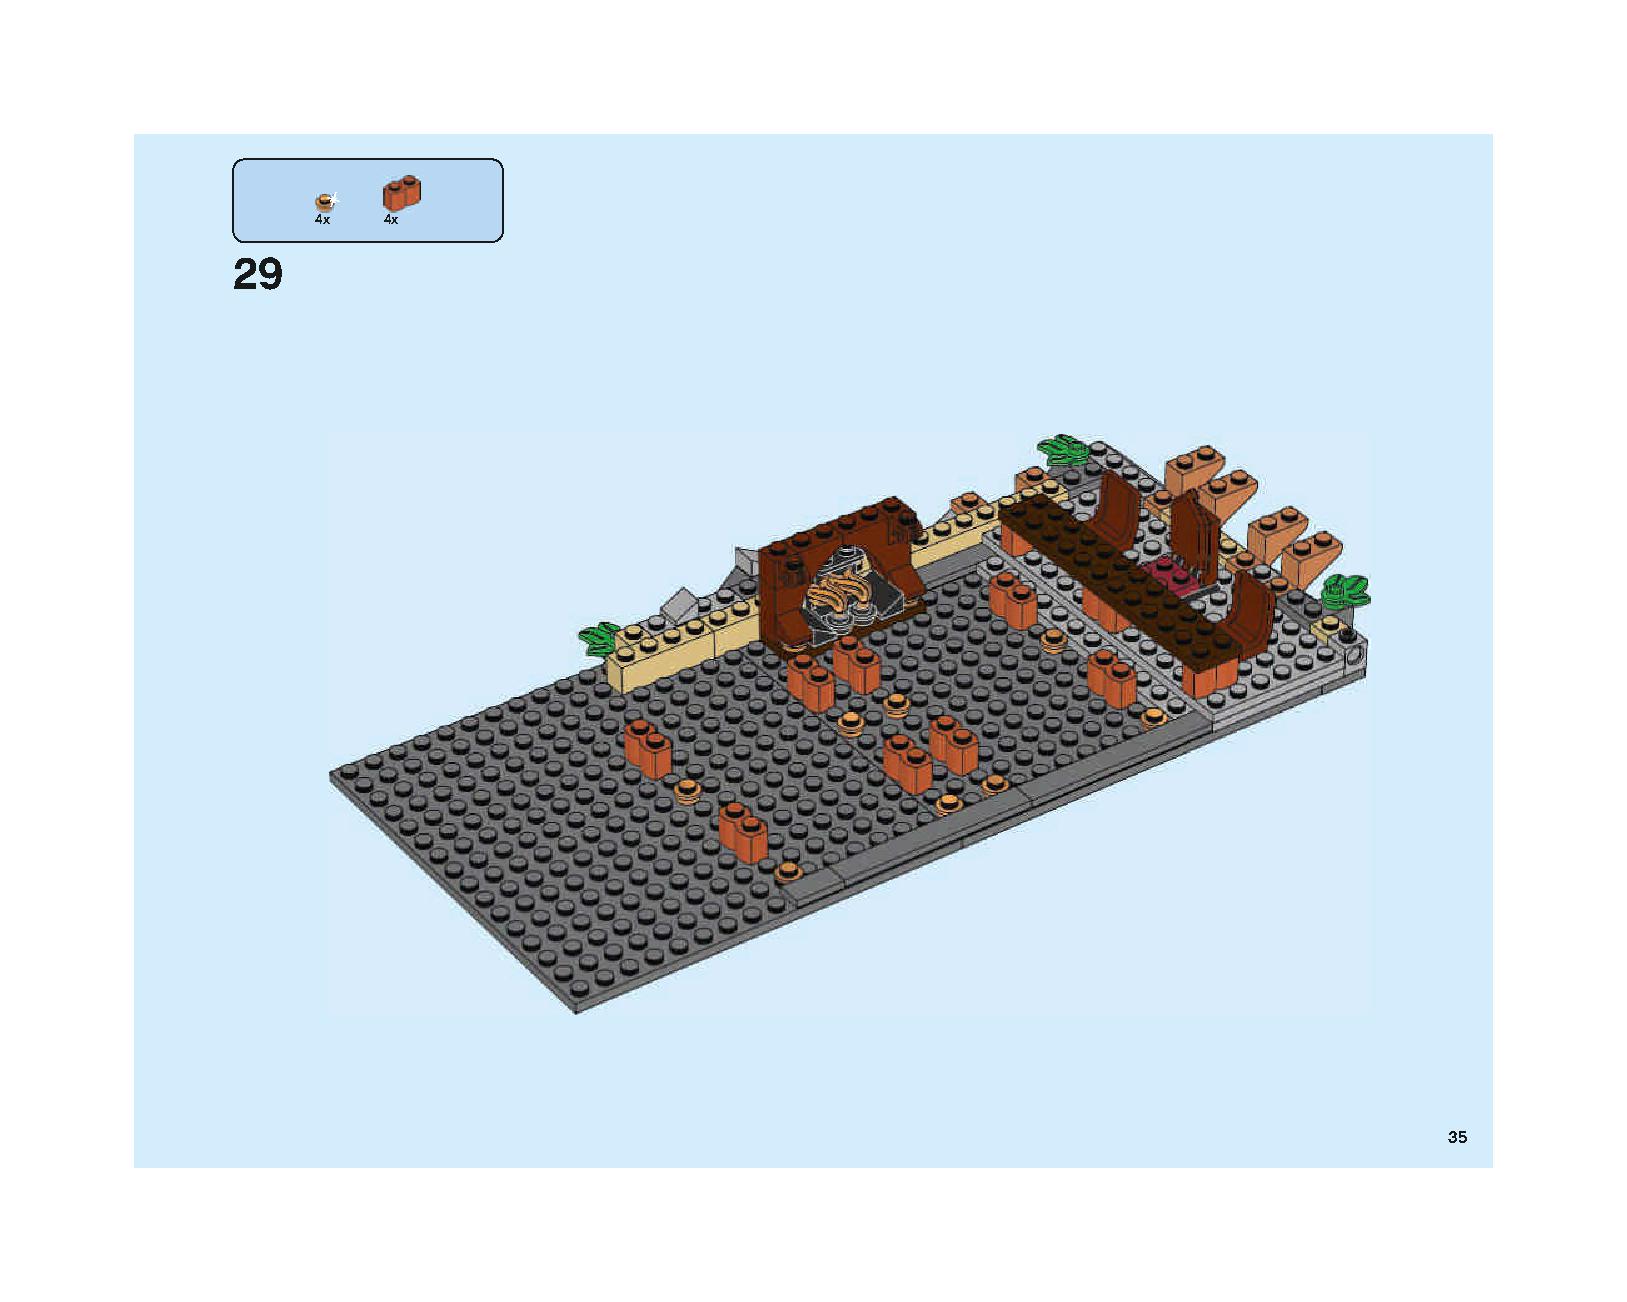 ホグワーツの大広間 75954 レゴの商品情報 レゴの説明書・組立方法 35 page